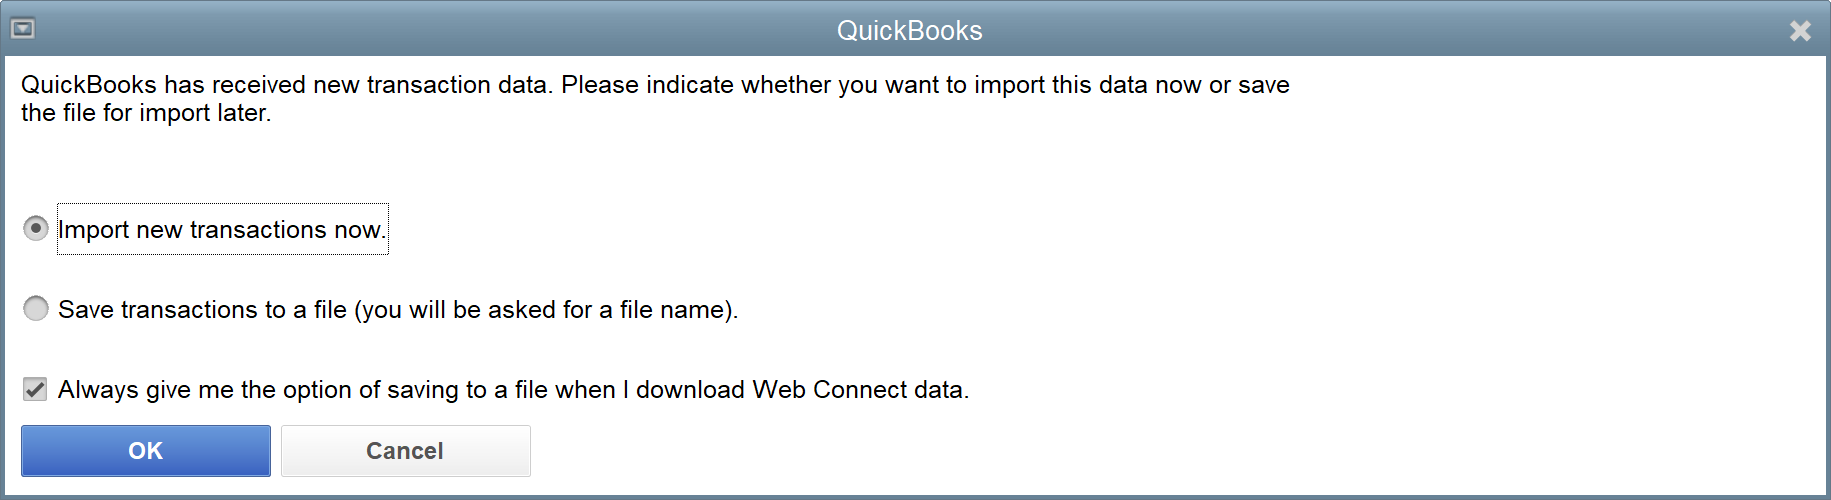 quickbooks desktop download bank feeds